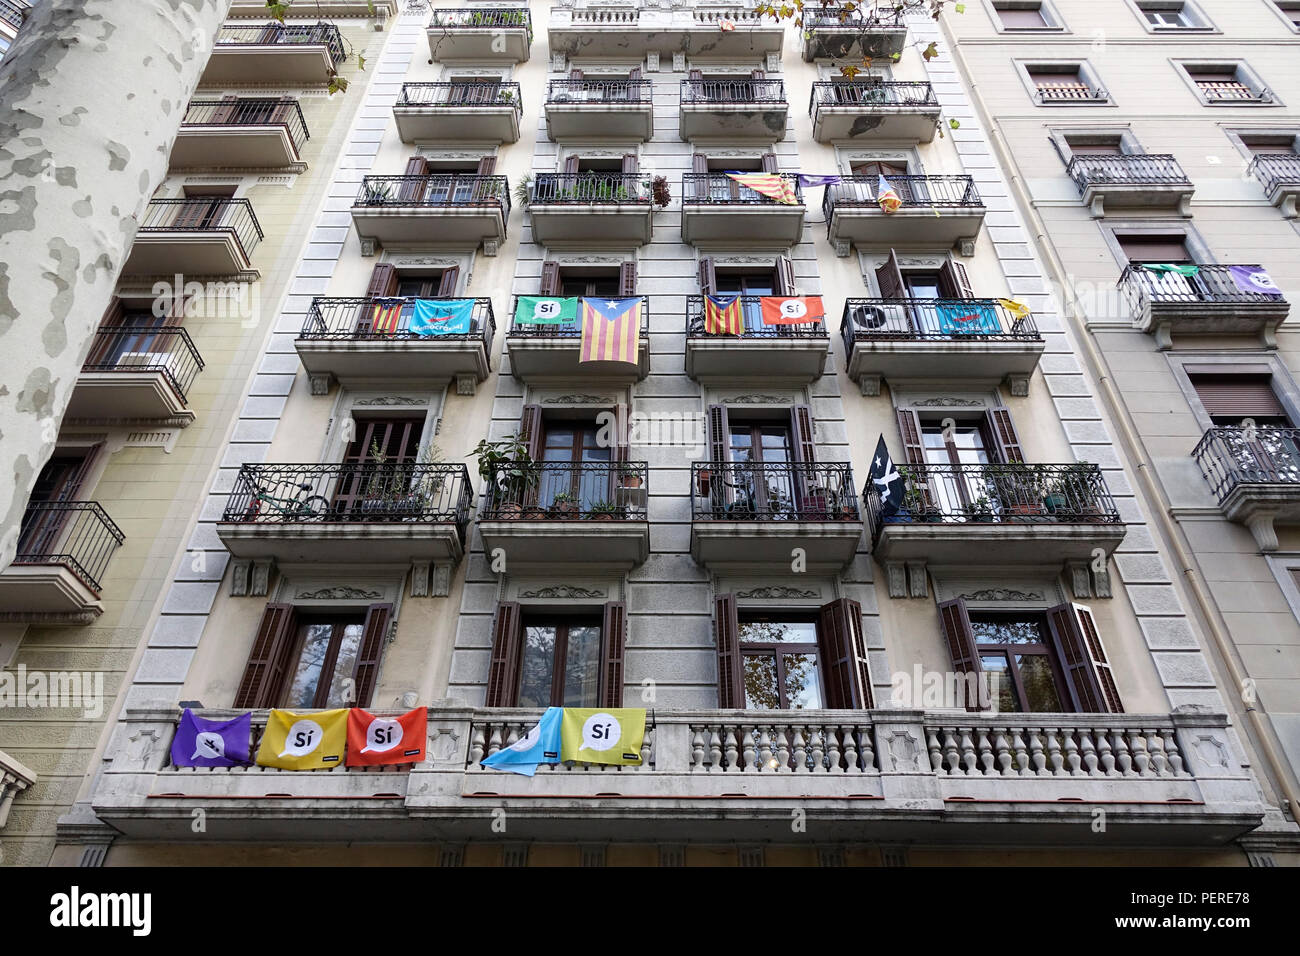 La Catalogne drapeaux nationaux et si oui drapeaux à l'appui d'un organisme indépendant Catalan voler de balcon d'un appartement à Barcelone Espagne Novembre 2017 Banque D'Images